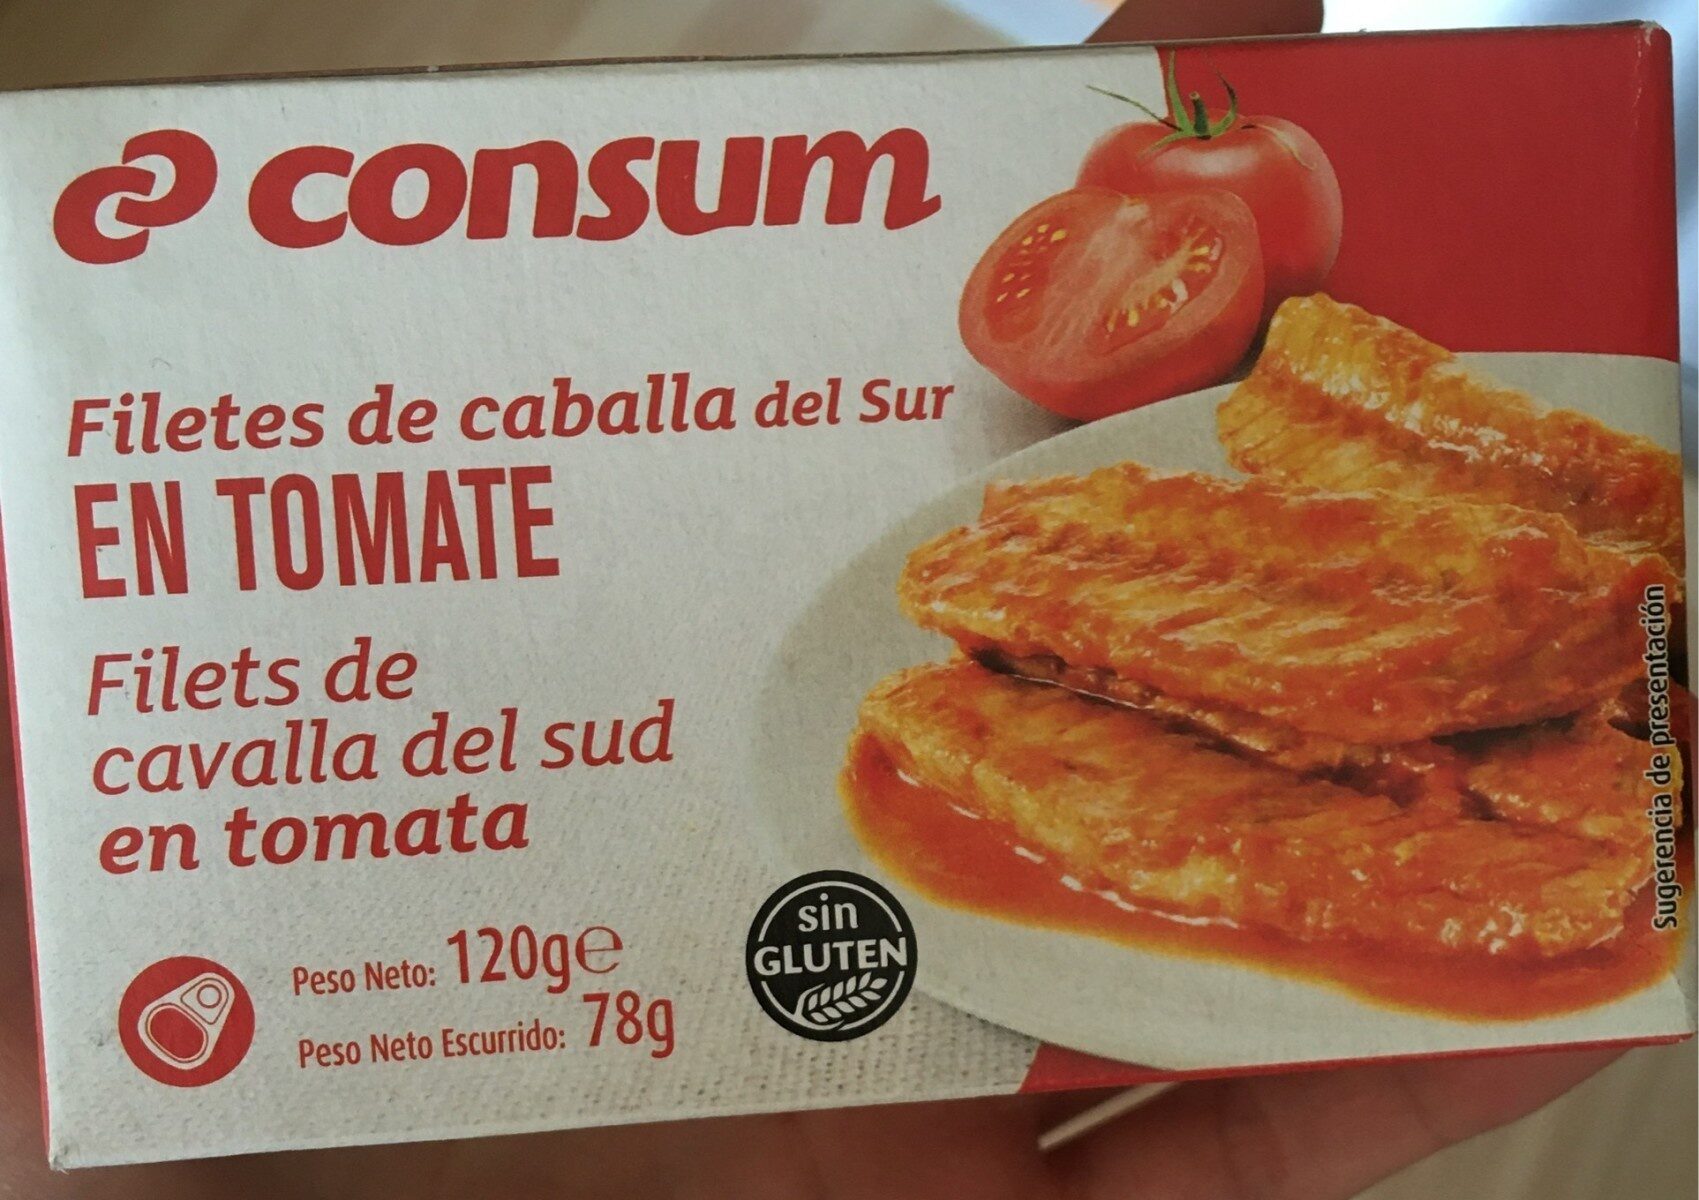 Filetes de caballa en tomate - Producte - es